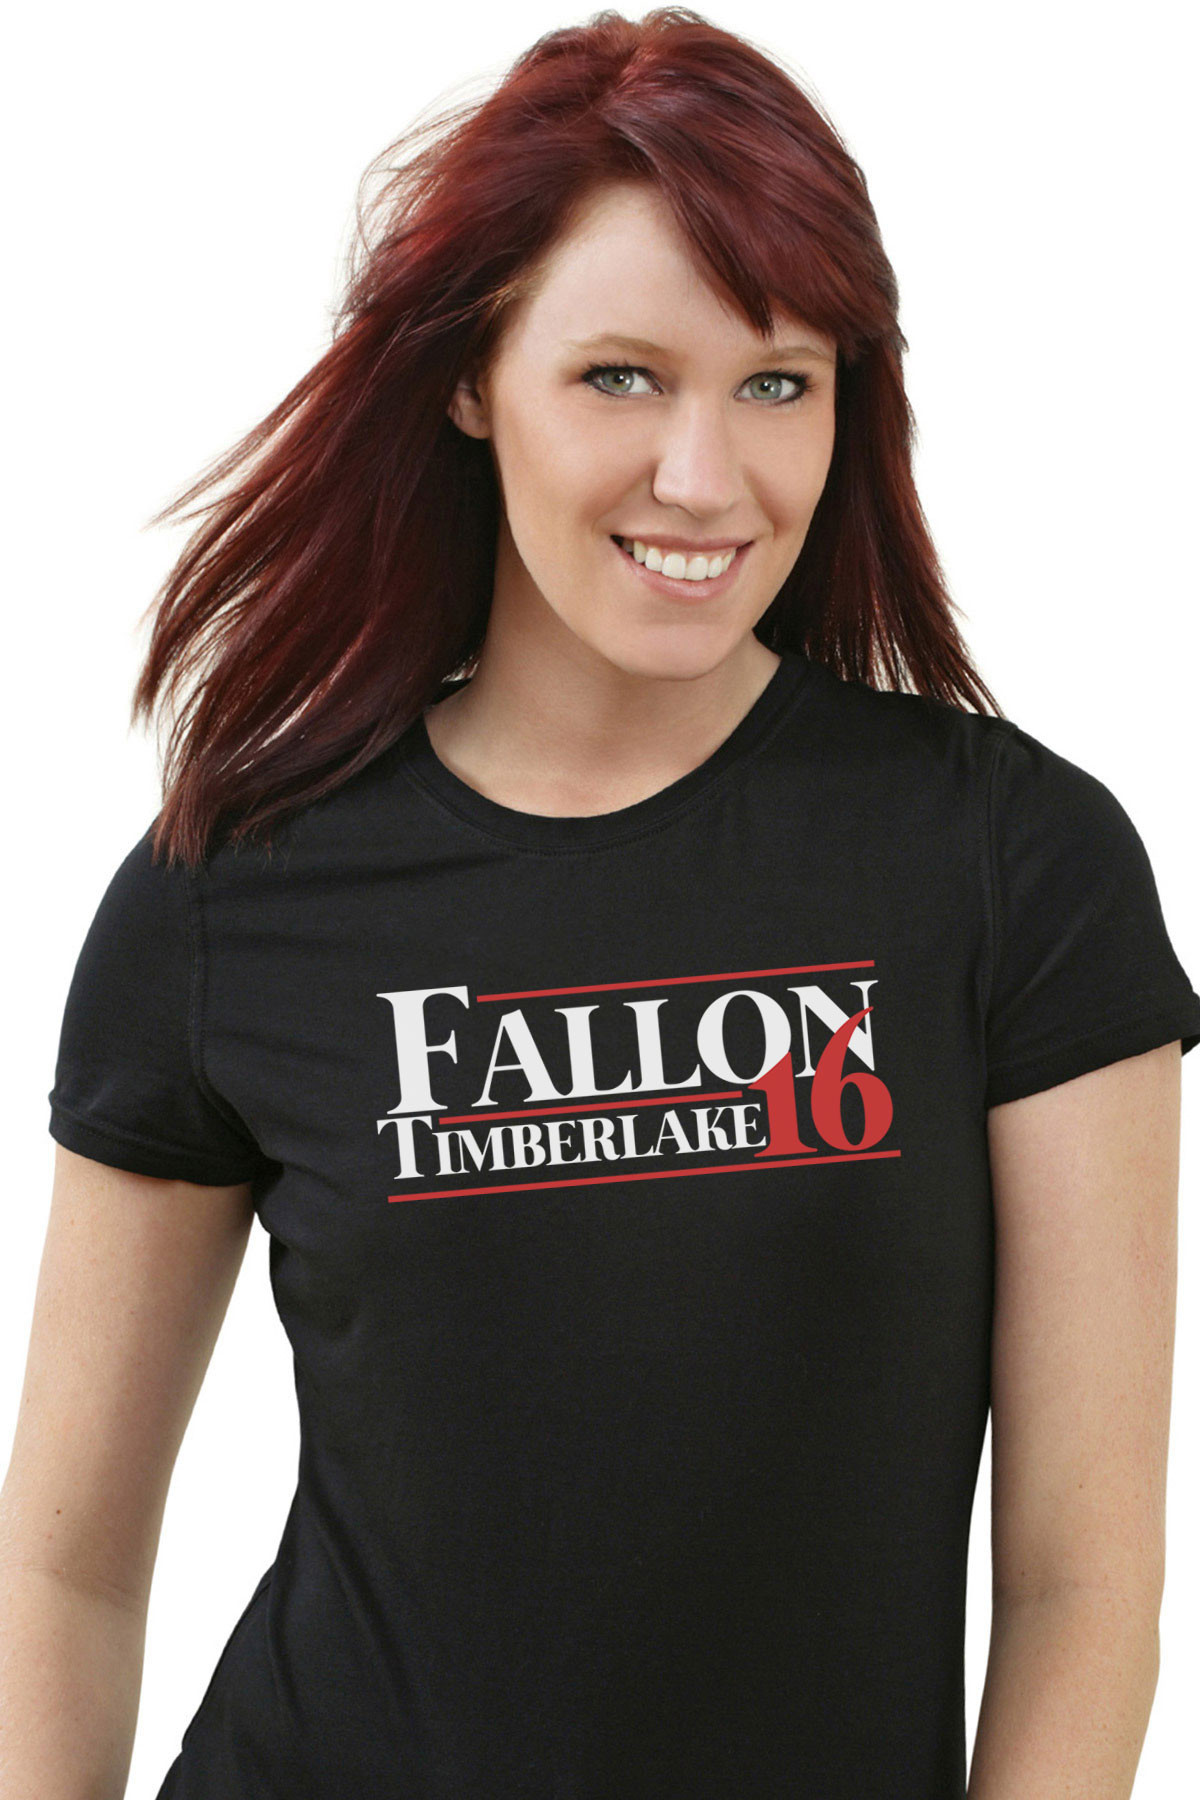 Fallon Timberlake 16 T-Shirt